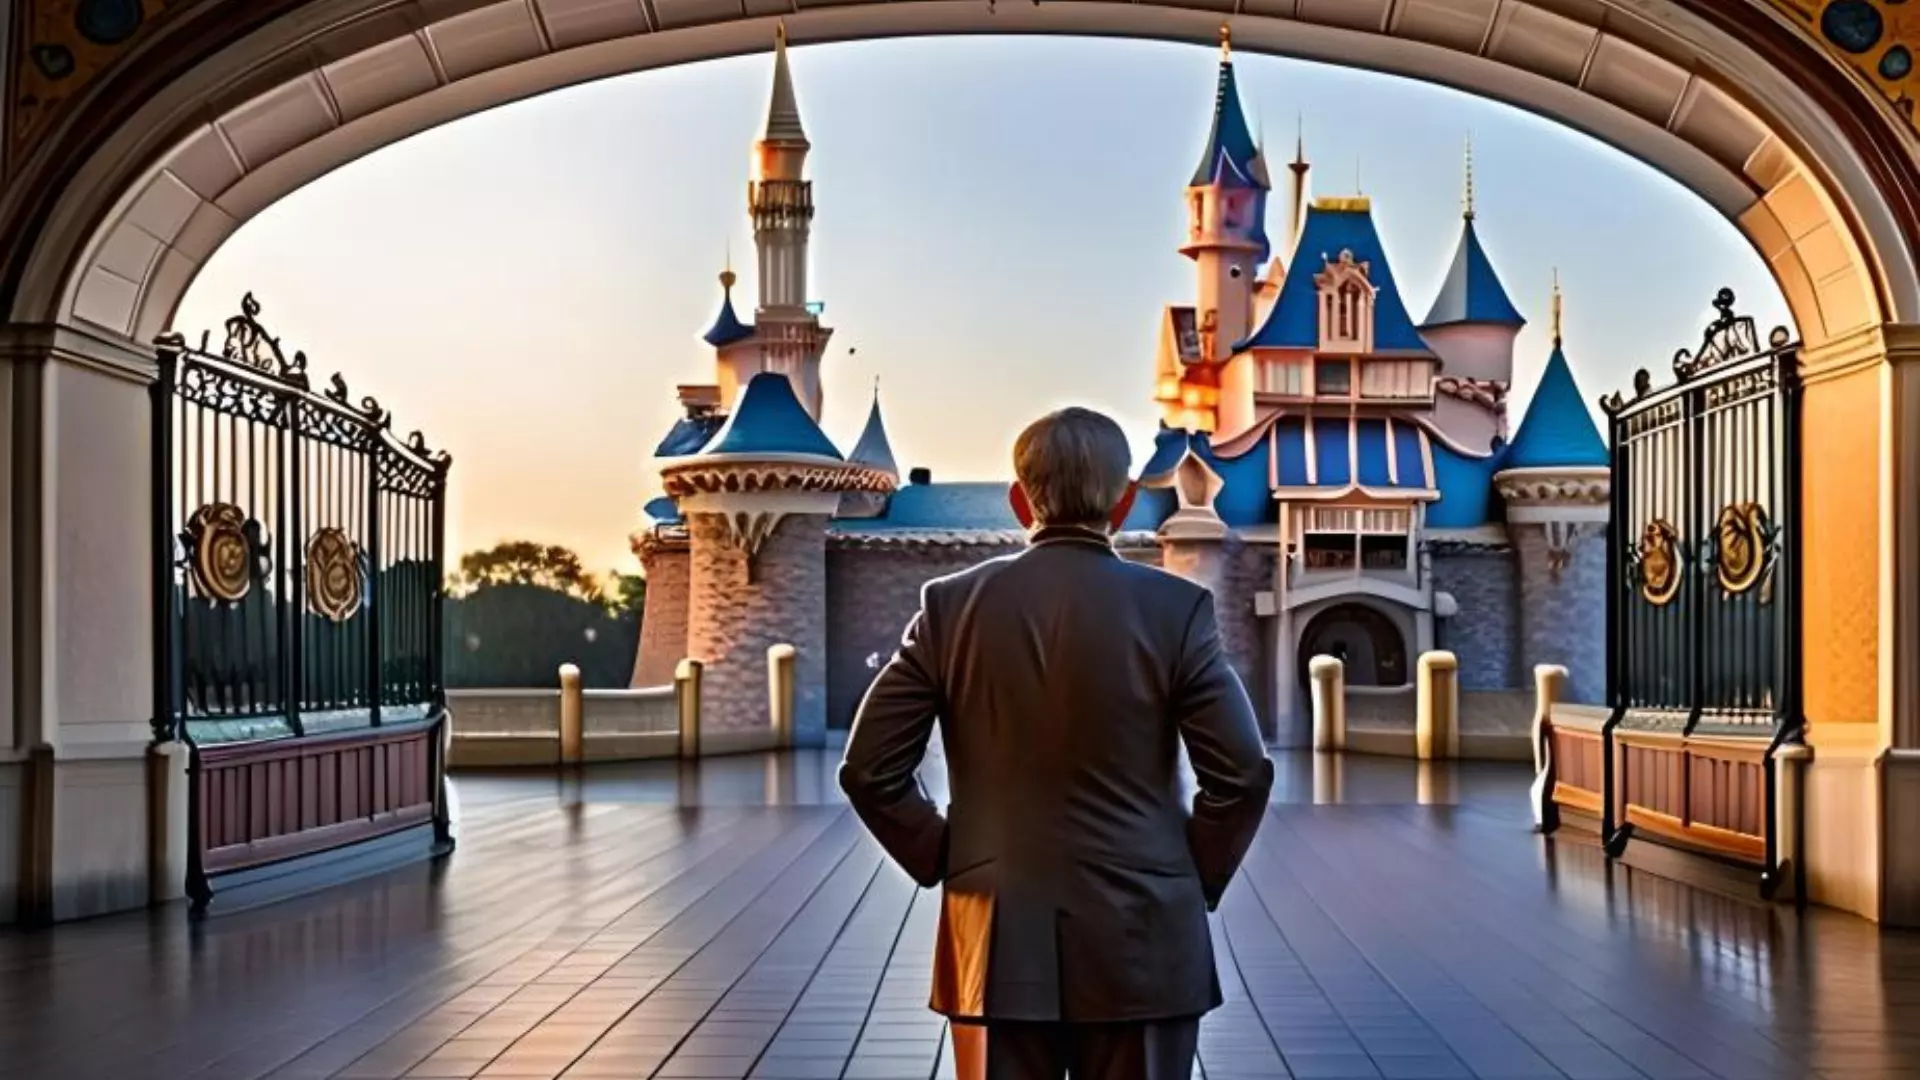 Walt Disney, triste, face à Disneyland, allégorie - Image générée par IA